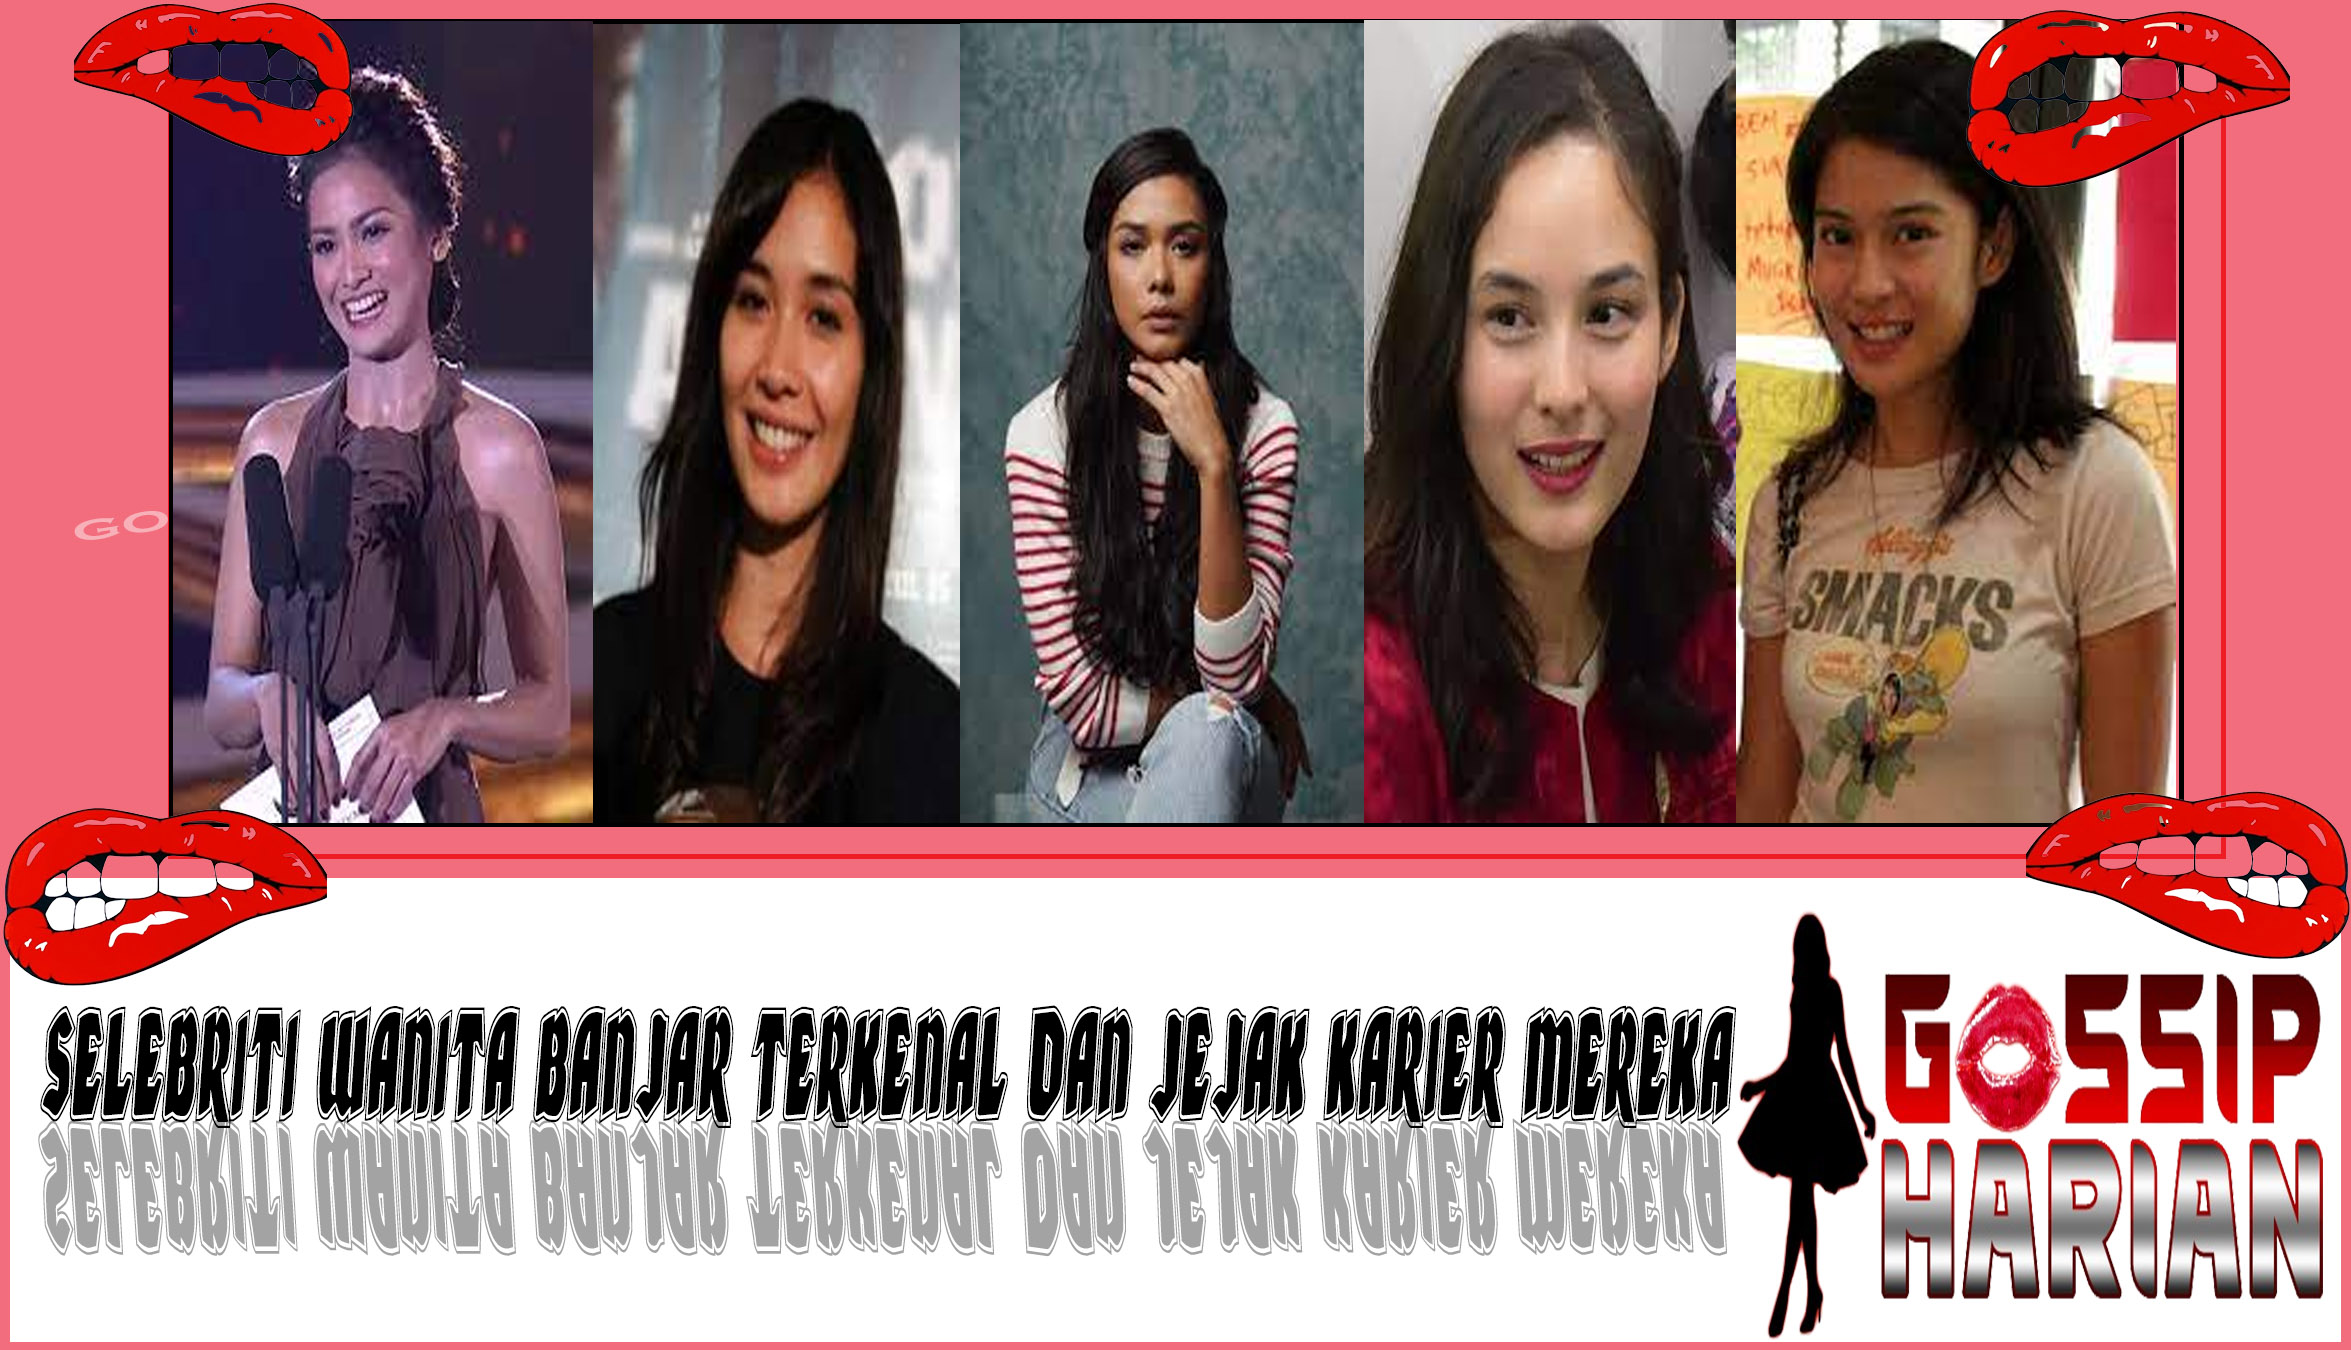 5 Selebriti Wanita Banjar